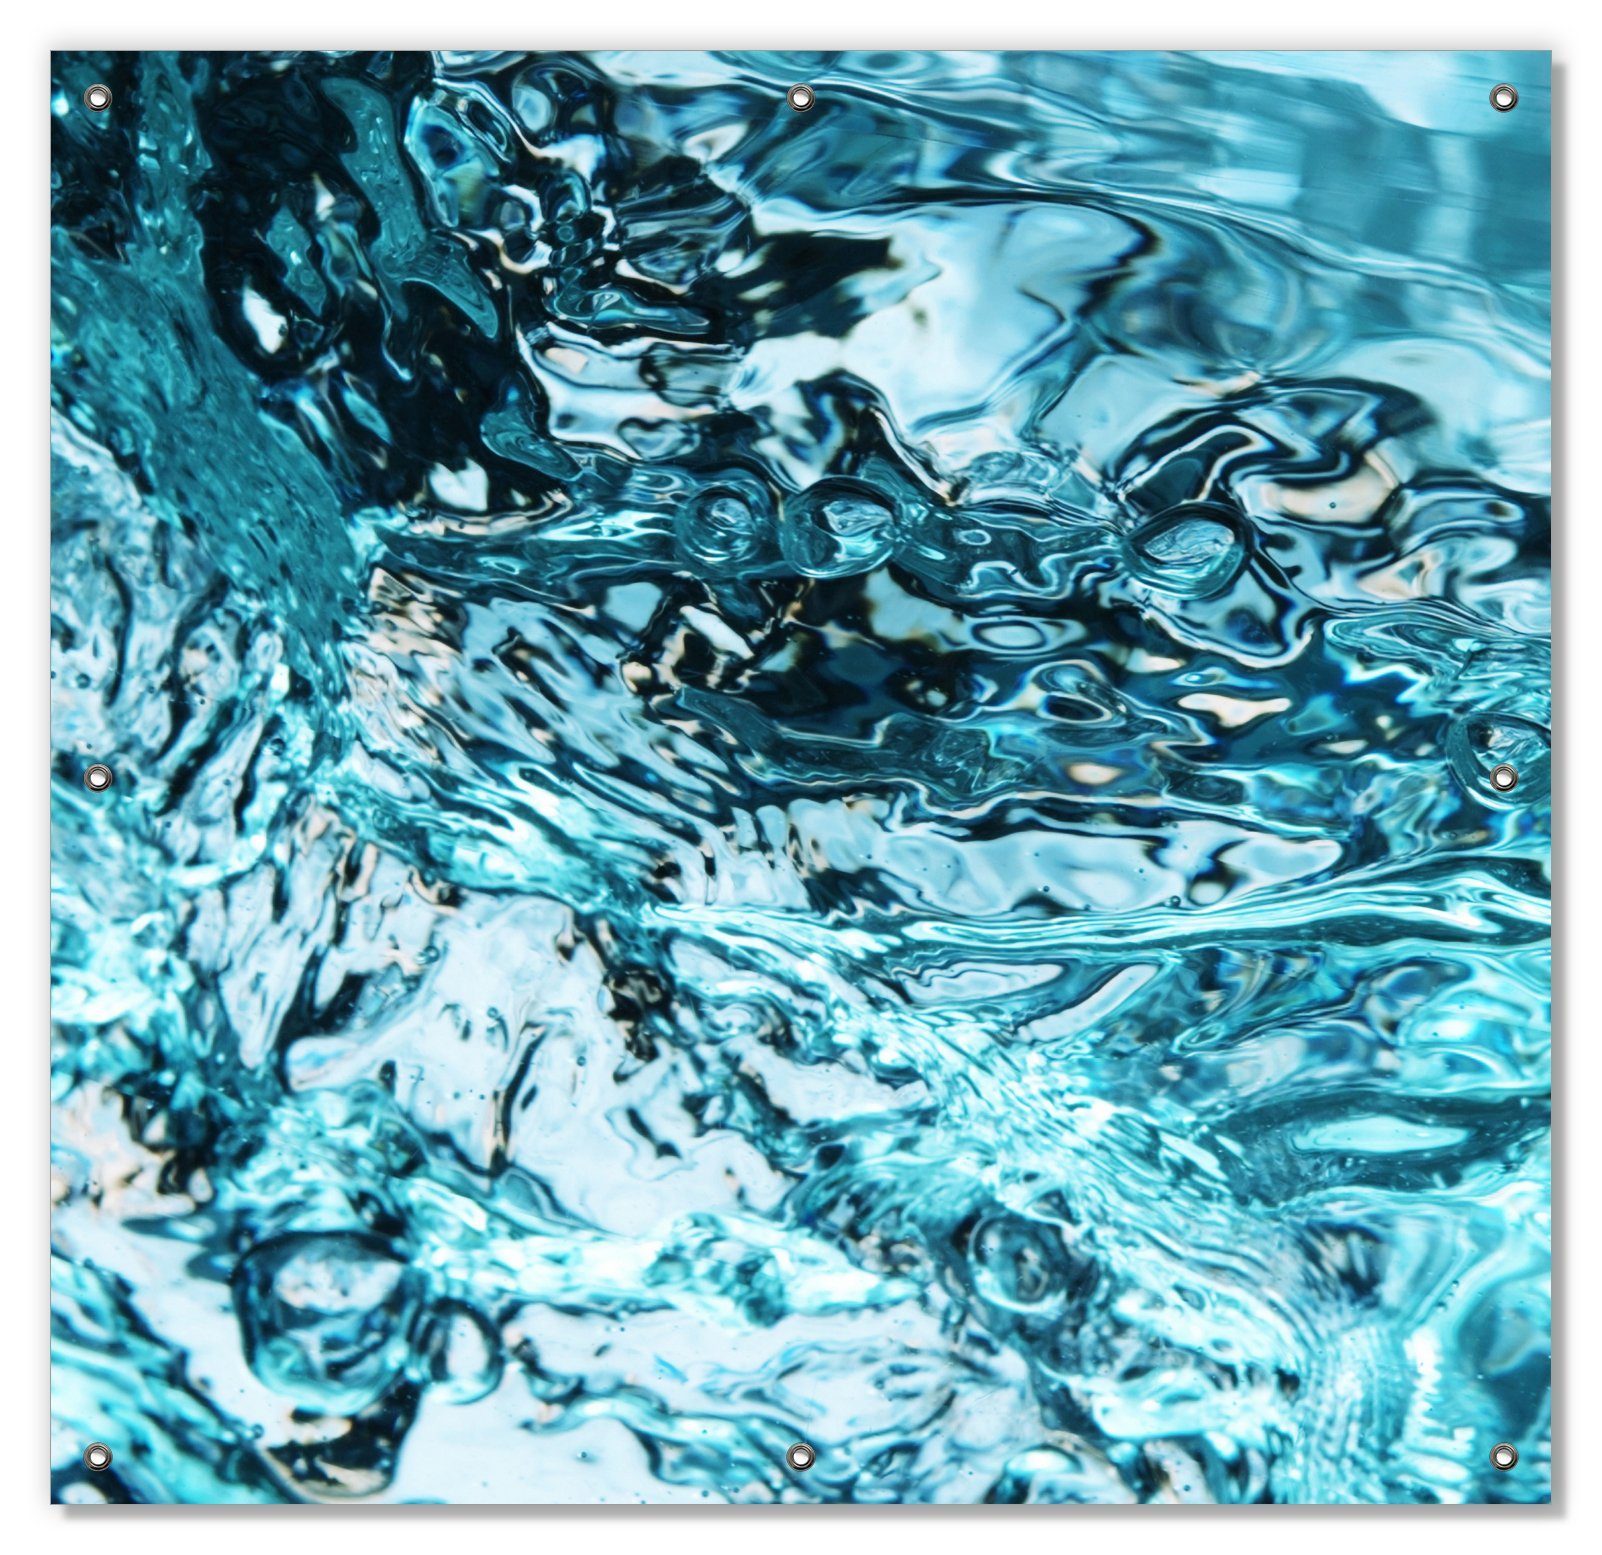 Sonnenschutz Frisches blaues Wasser in Aufruhr, Wallario, blickdicht, mit Saugnäpfen, wiederablösbar und wiederverwendbar